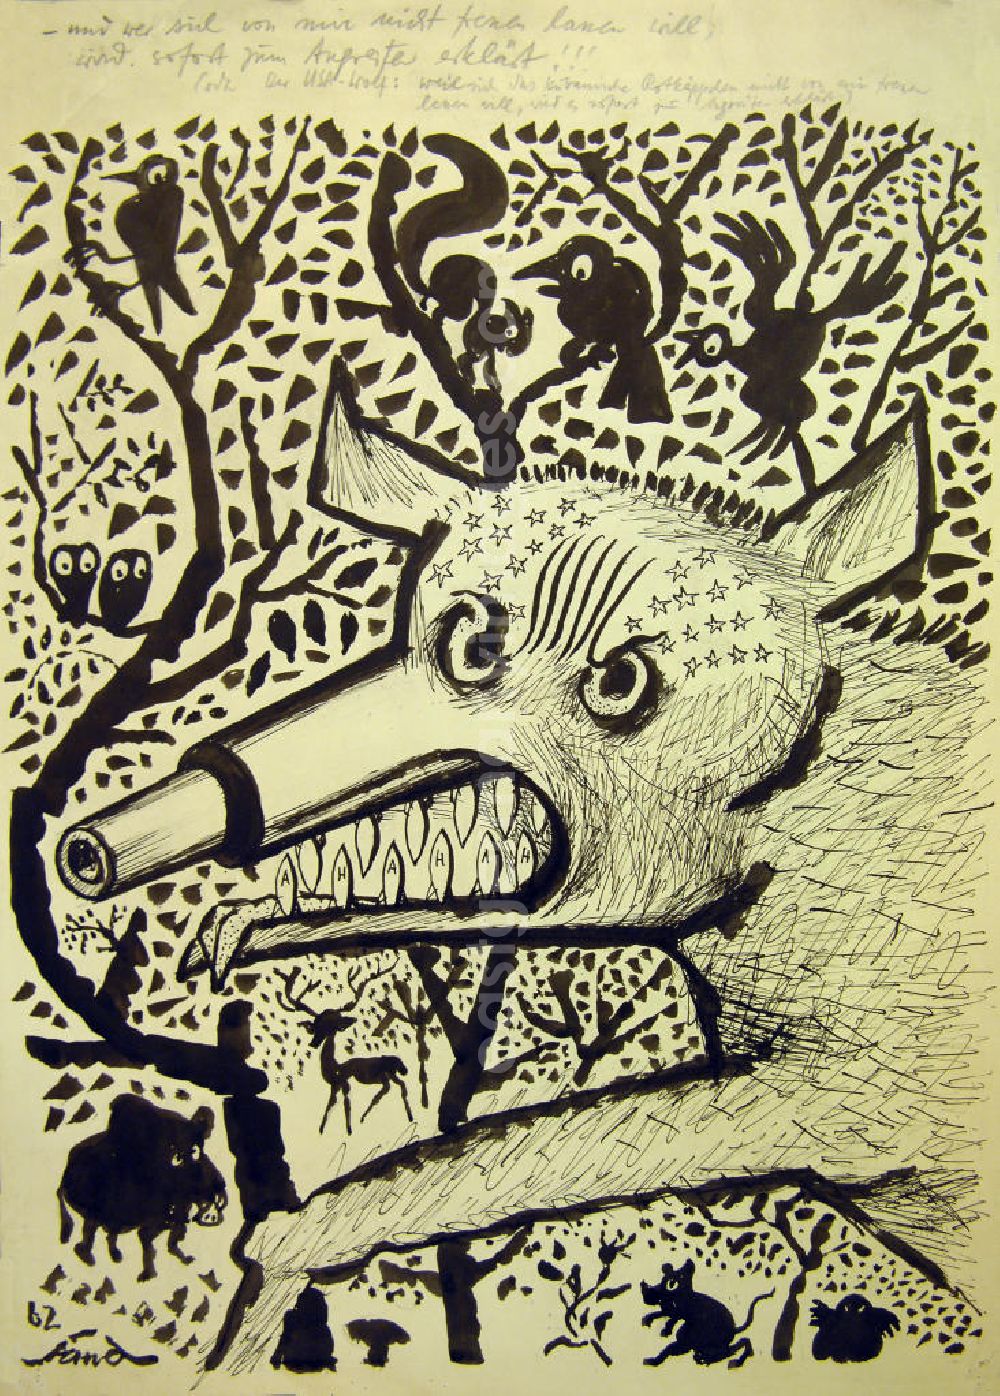 GDR image archive: Berlin - Zeichnung von Herbert Sandberg Der USA-Wolf aus dem Jahr 1962, 30,5x43,